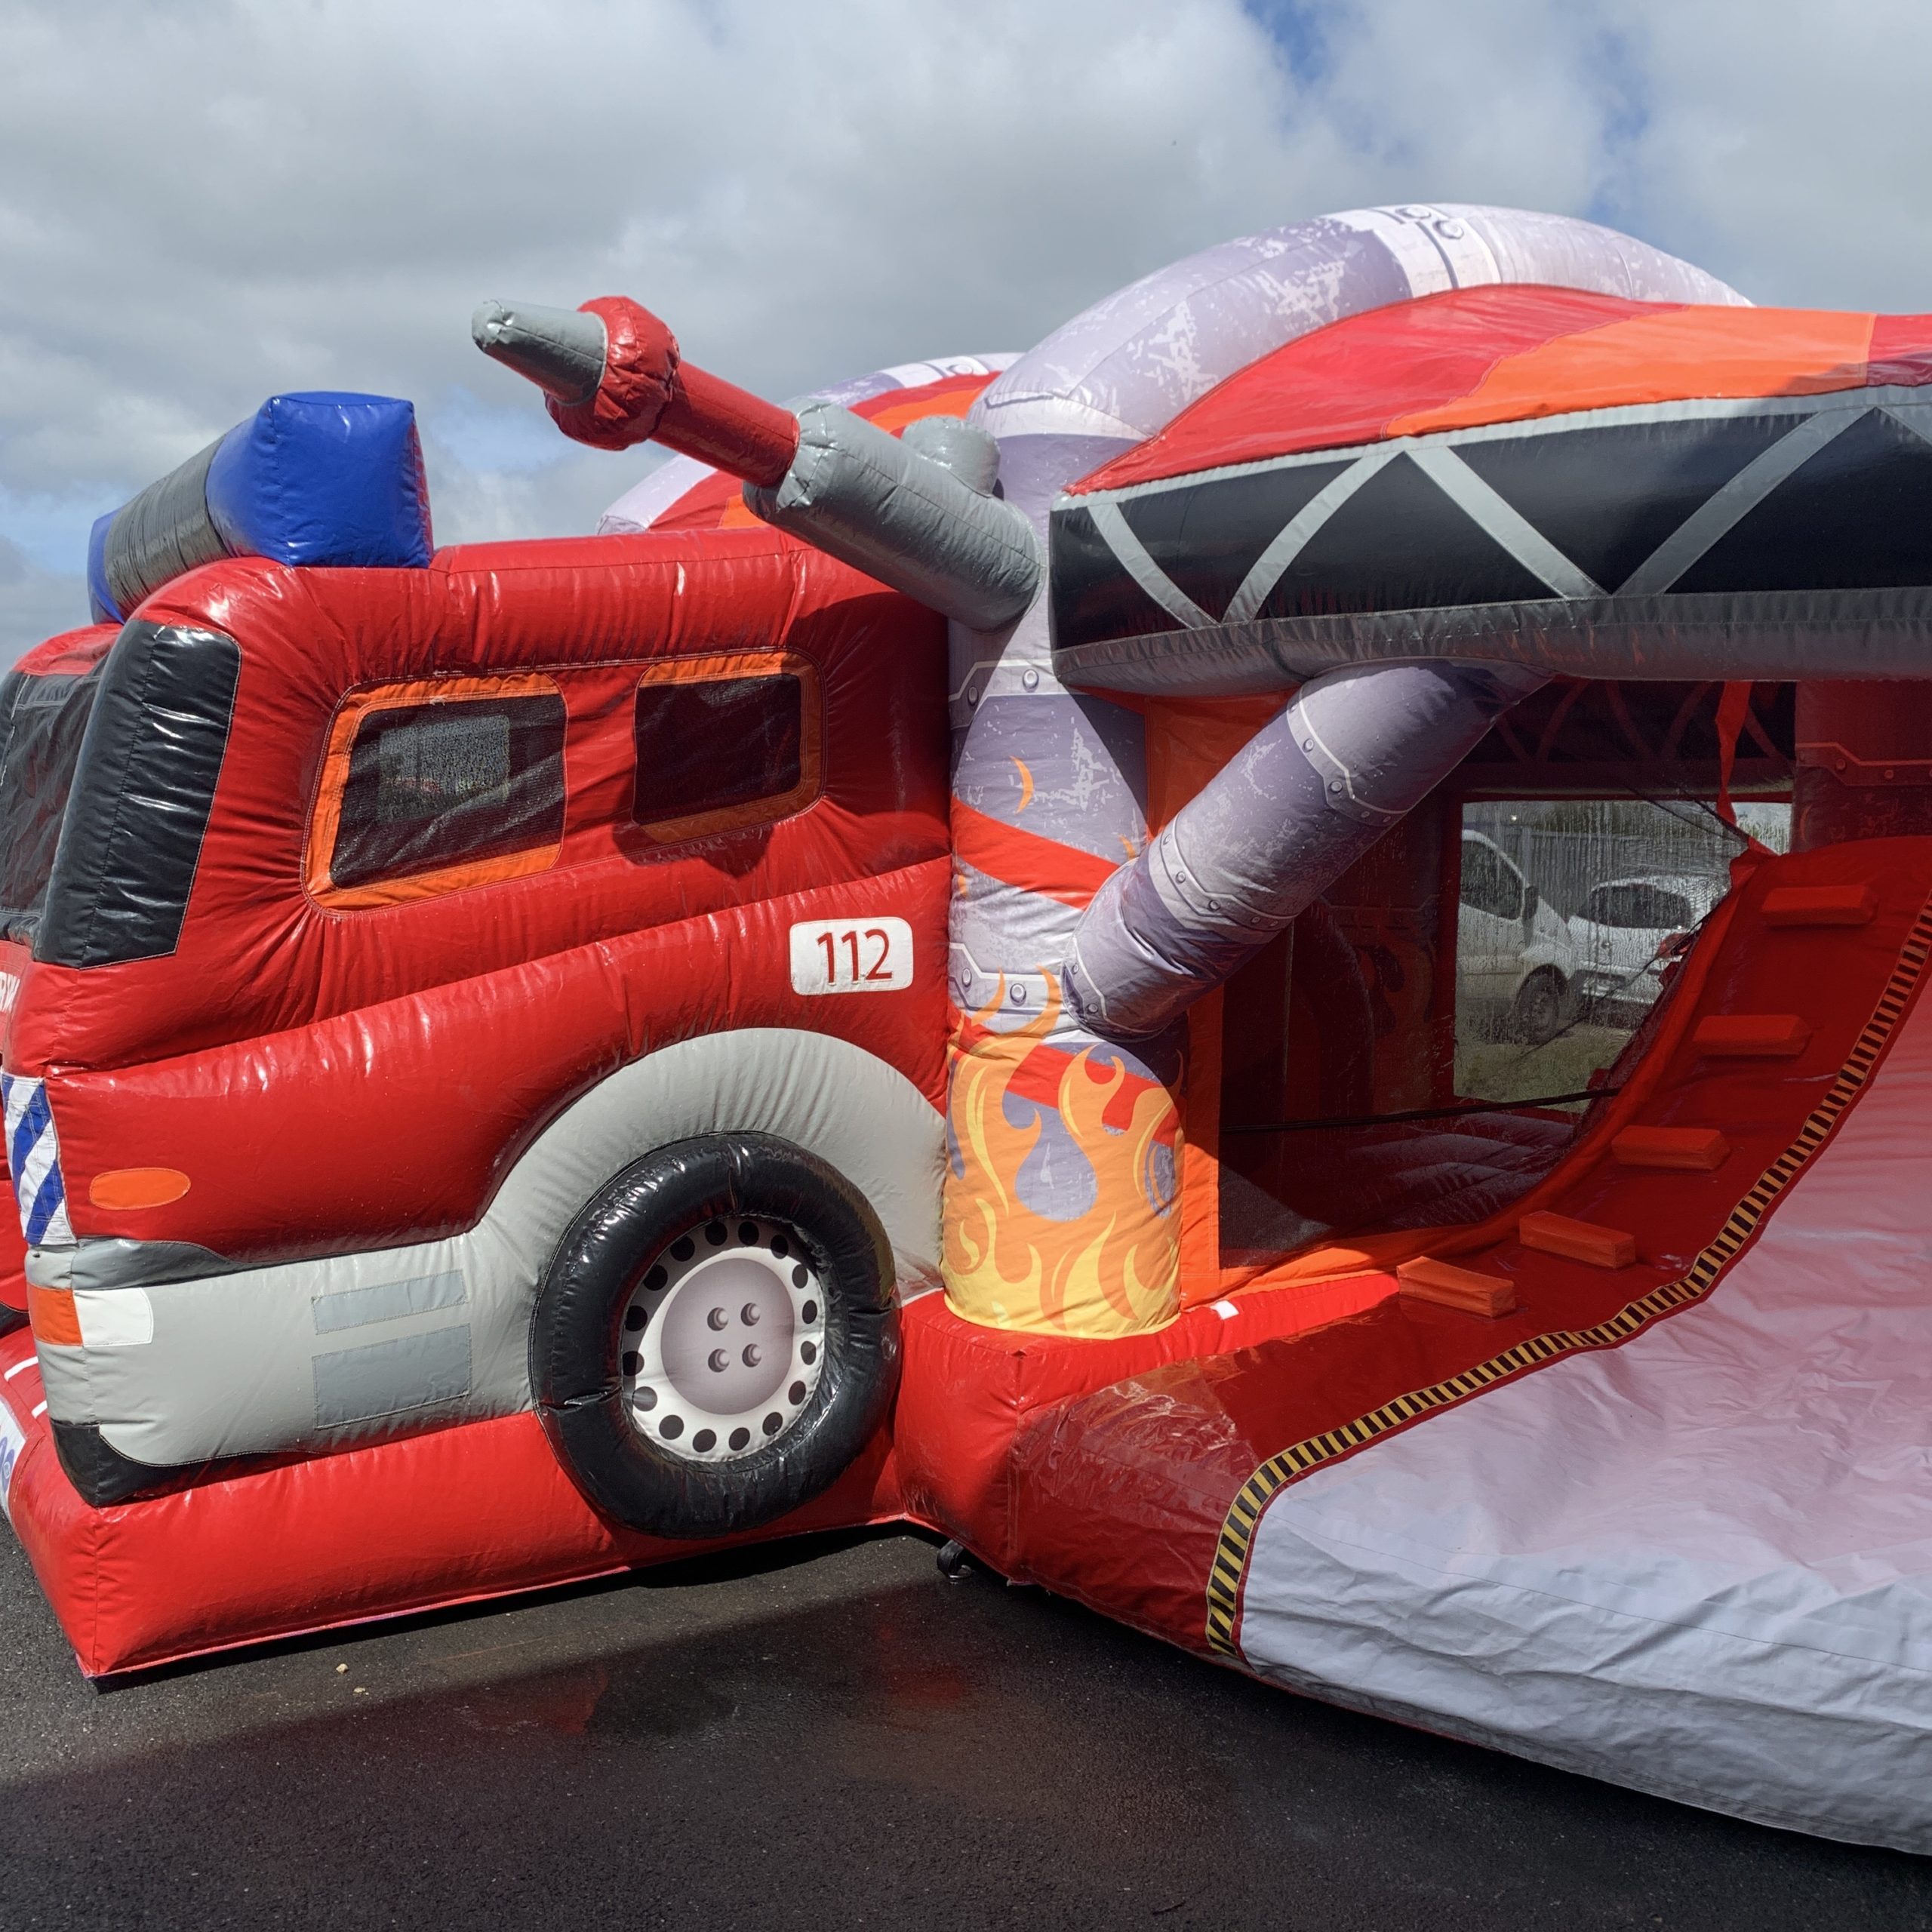 Parcours gonflable camion pompier, en avant les aventures !